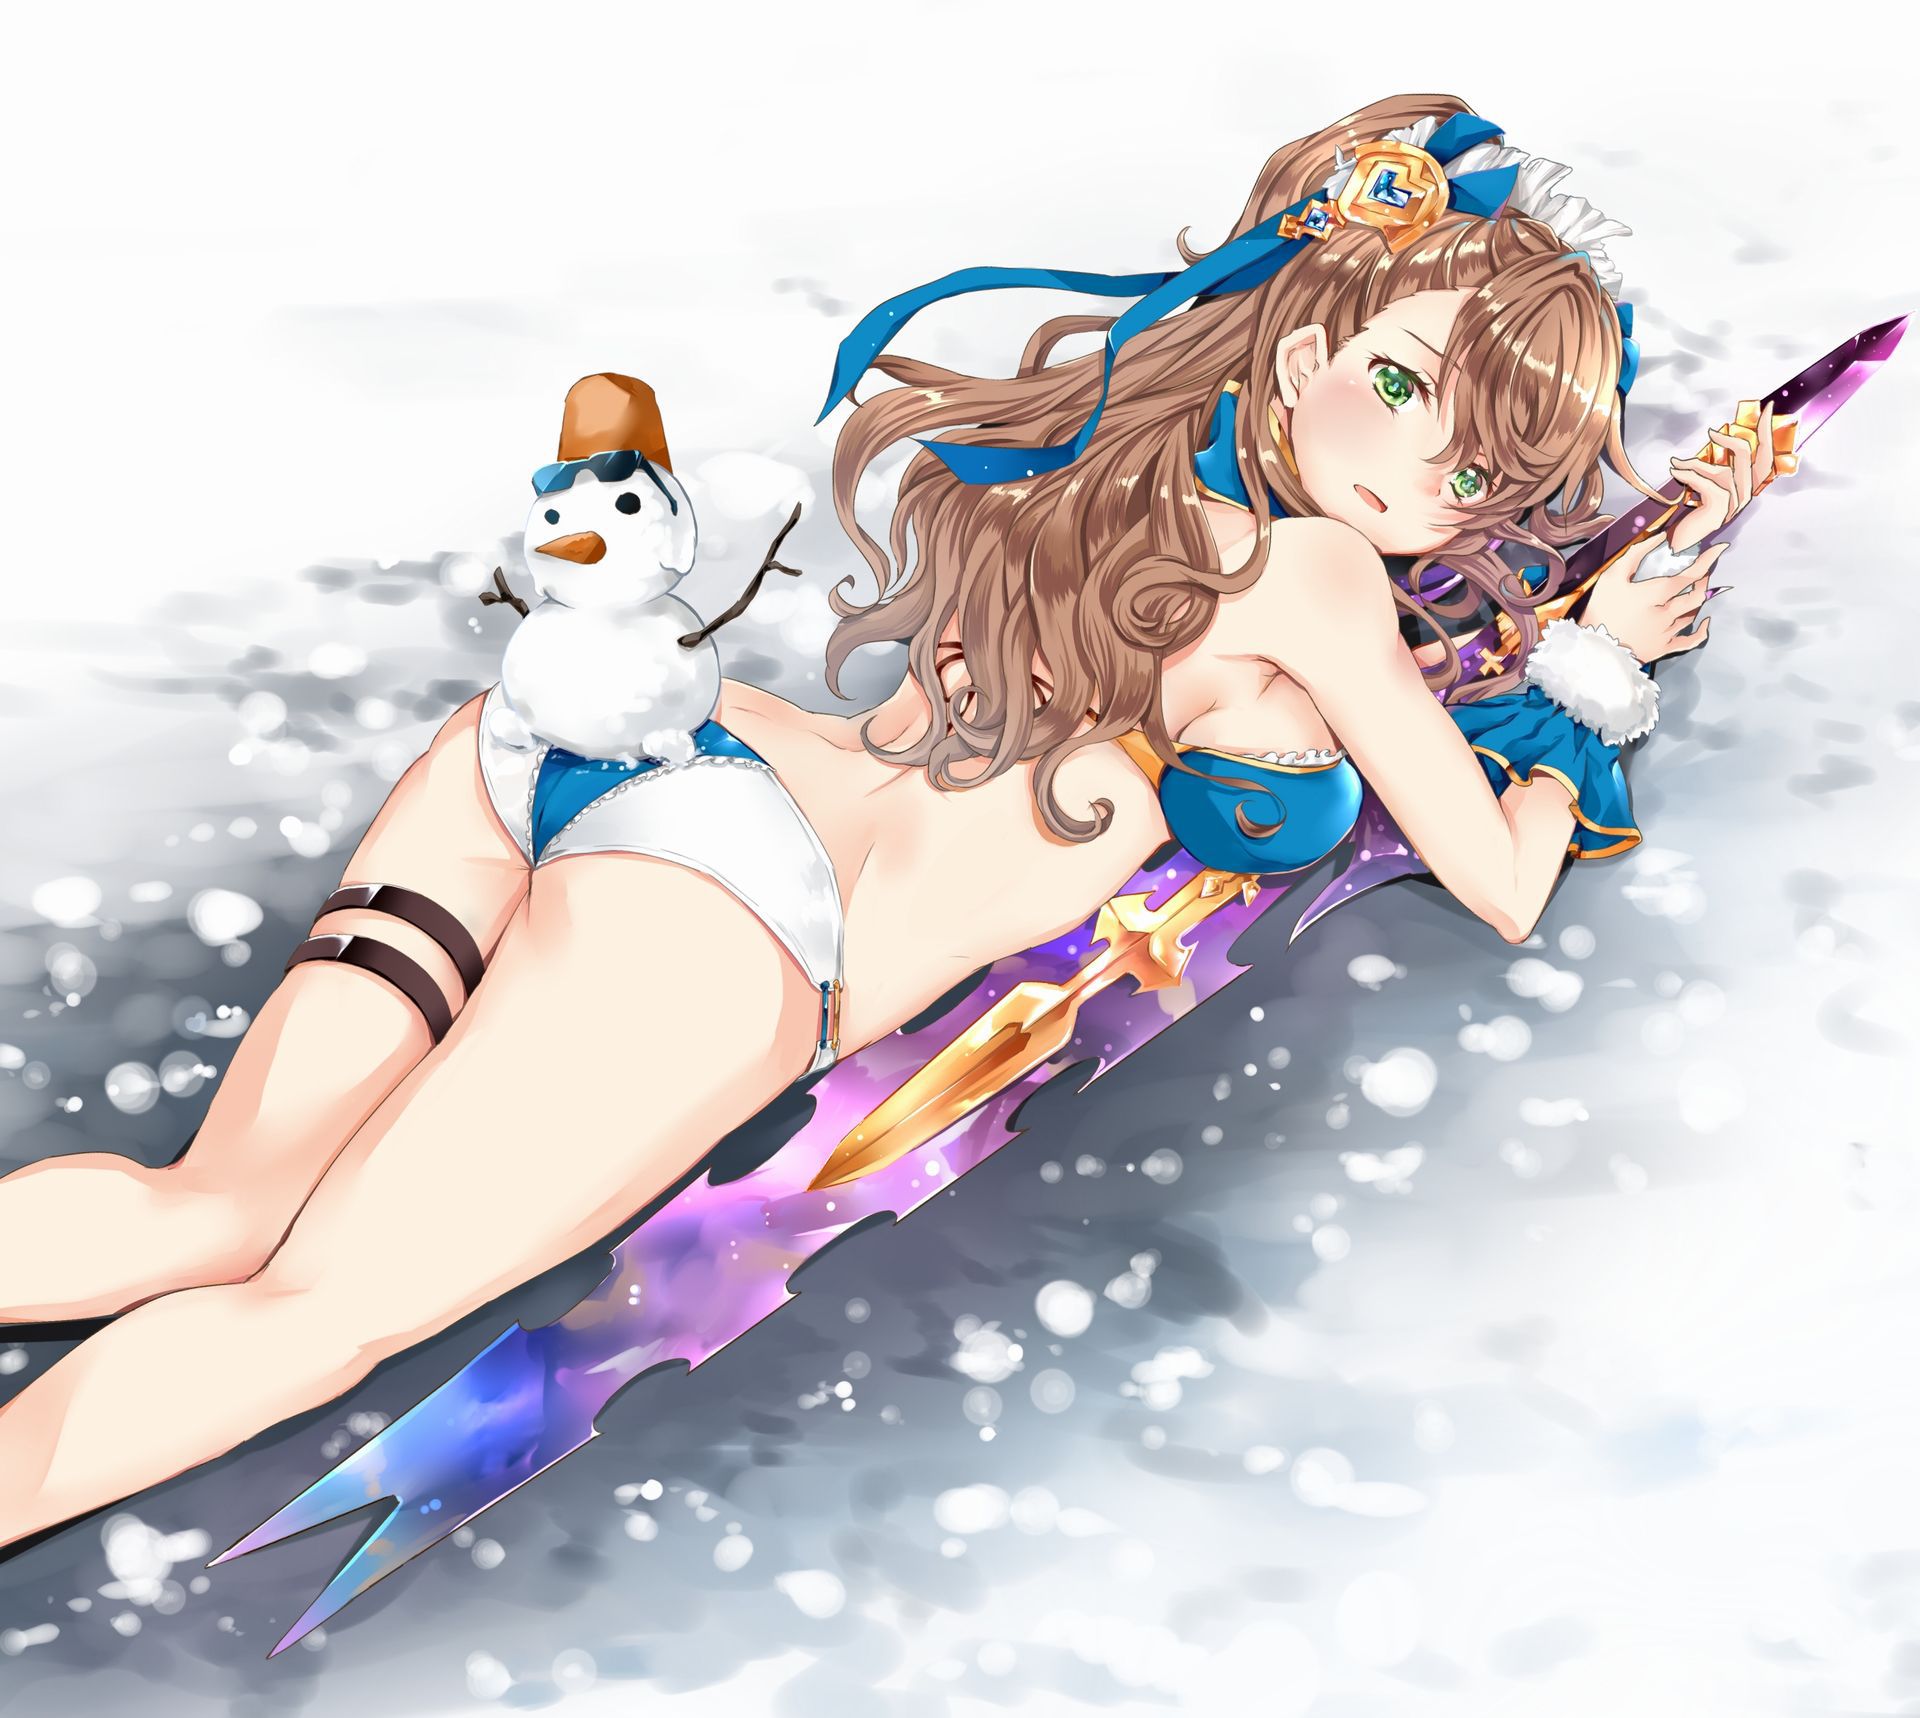 【二次・ZIP】冬なので雪だるまと美少女の画像まとめ 48